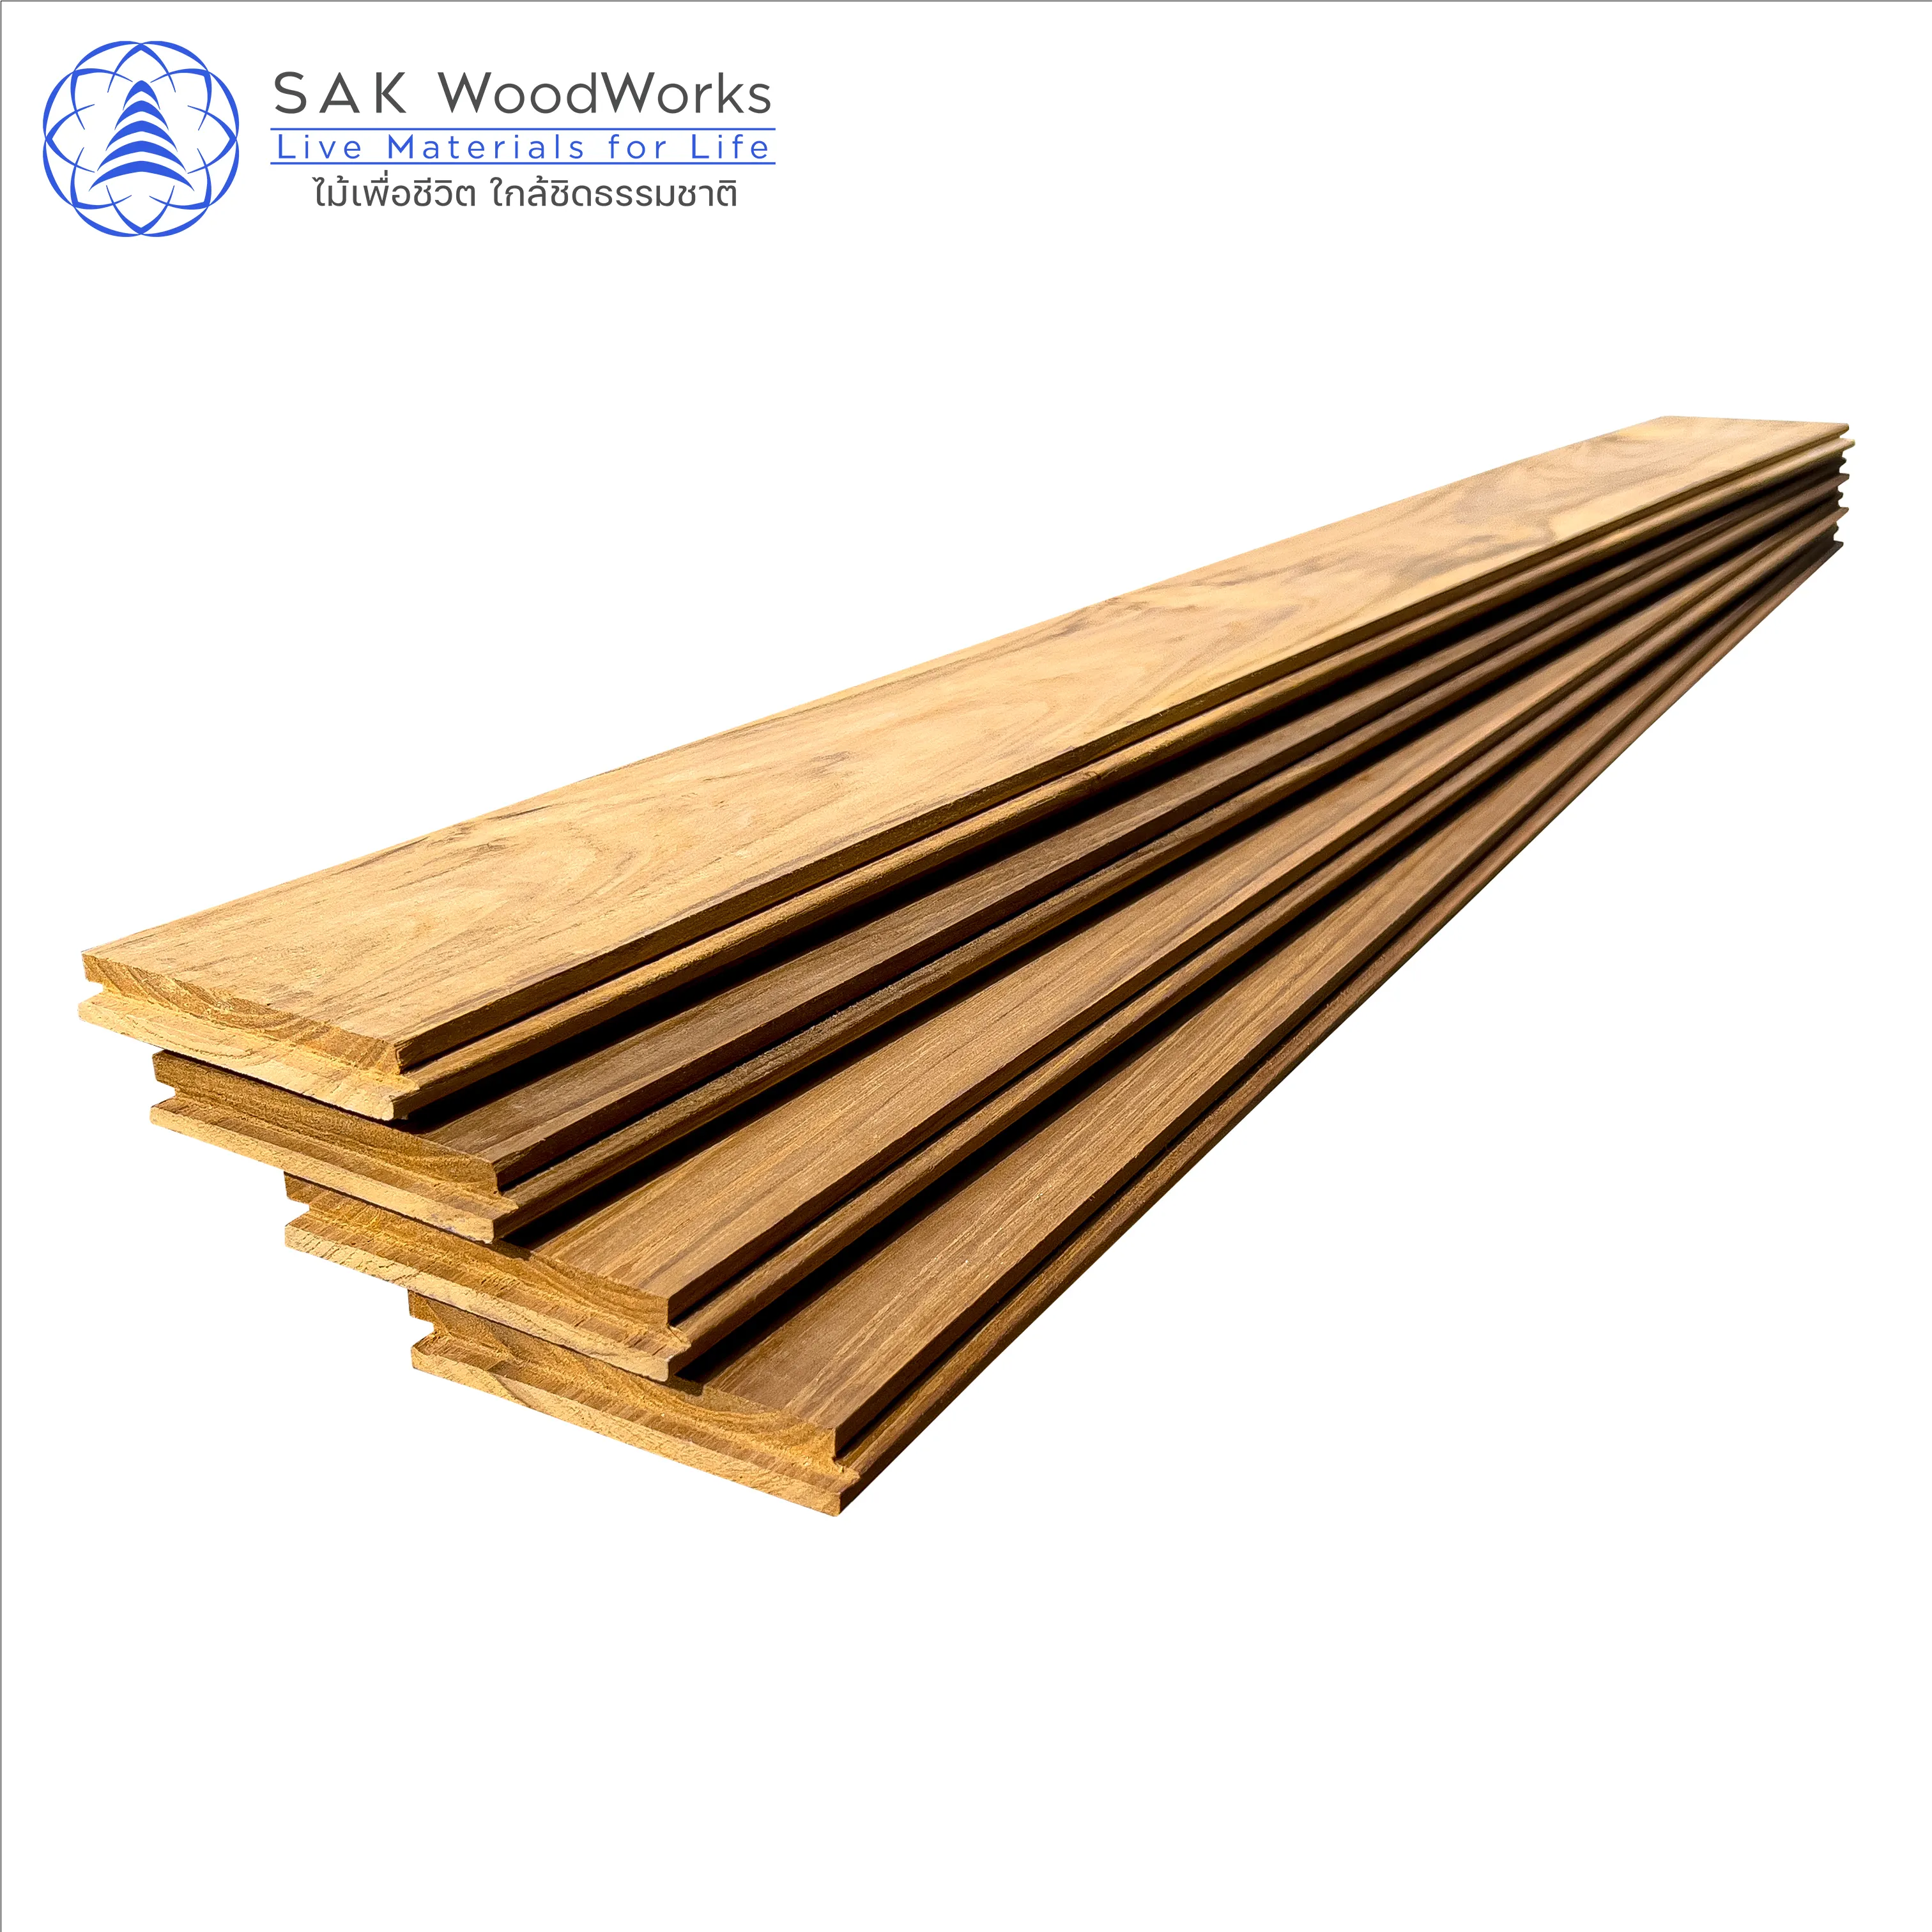 15 x 90 x 600 mm. Thai Teak Parquet Boards by SAK WoodWorks Luxurious Indoor Wood Parquet Flooring with FSC Certified